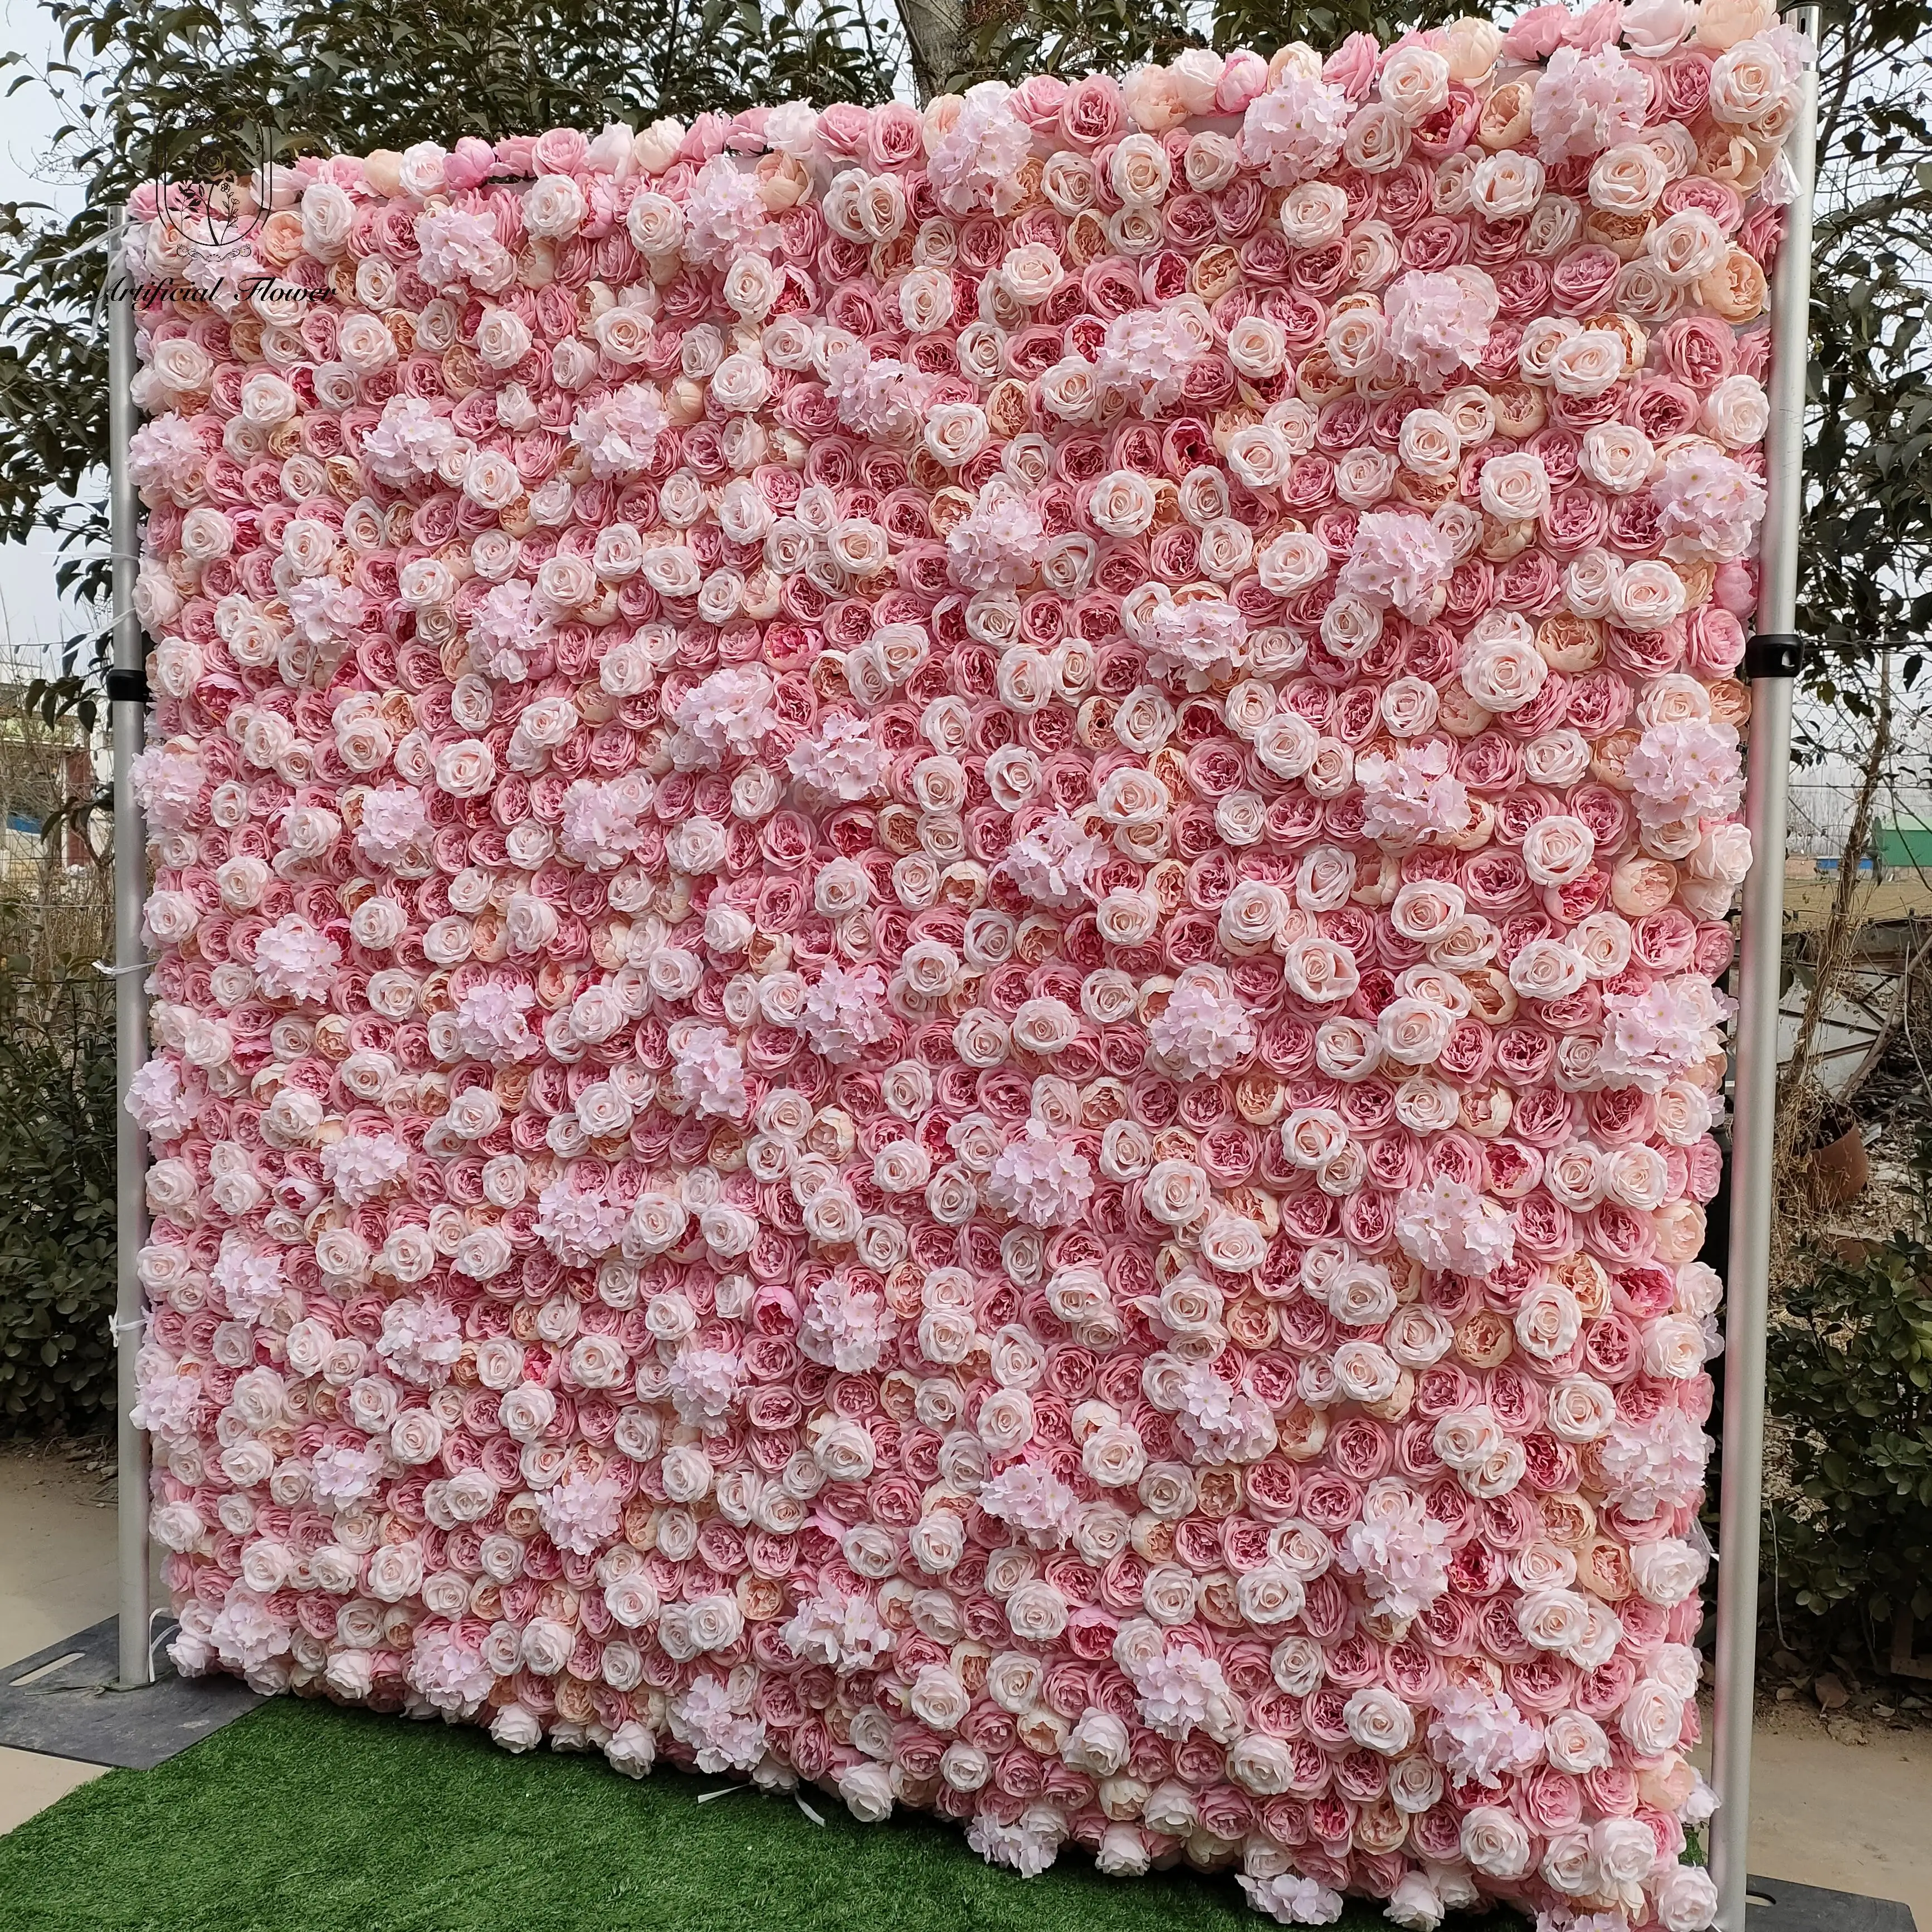 Venta al por mayor enrollar Pared de flores 8ft x 8ft seda artificial Rosa flor Pared de lujo flor decorativa pared telón de fondo